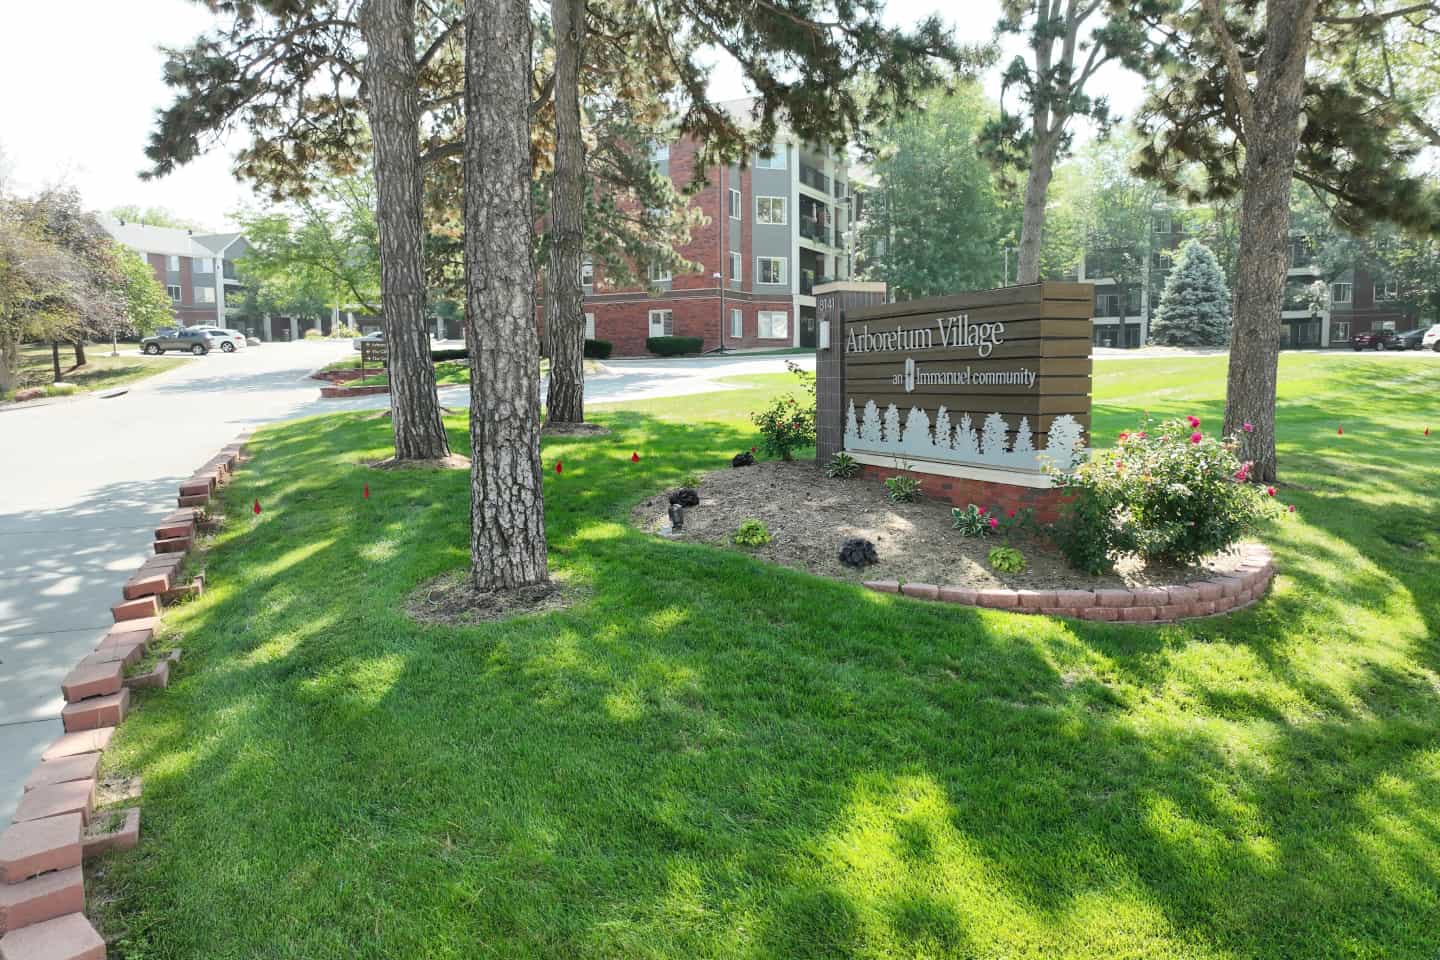 Front Sign of the Arboretum Village campus